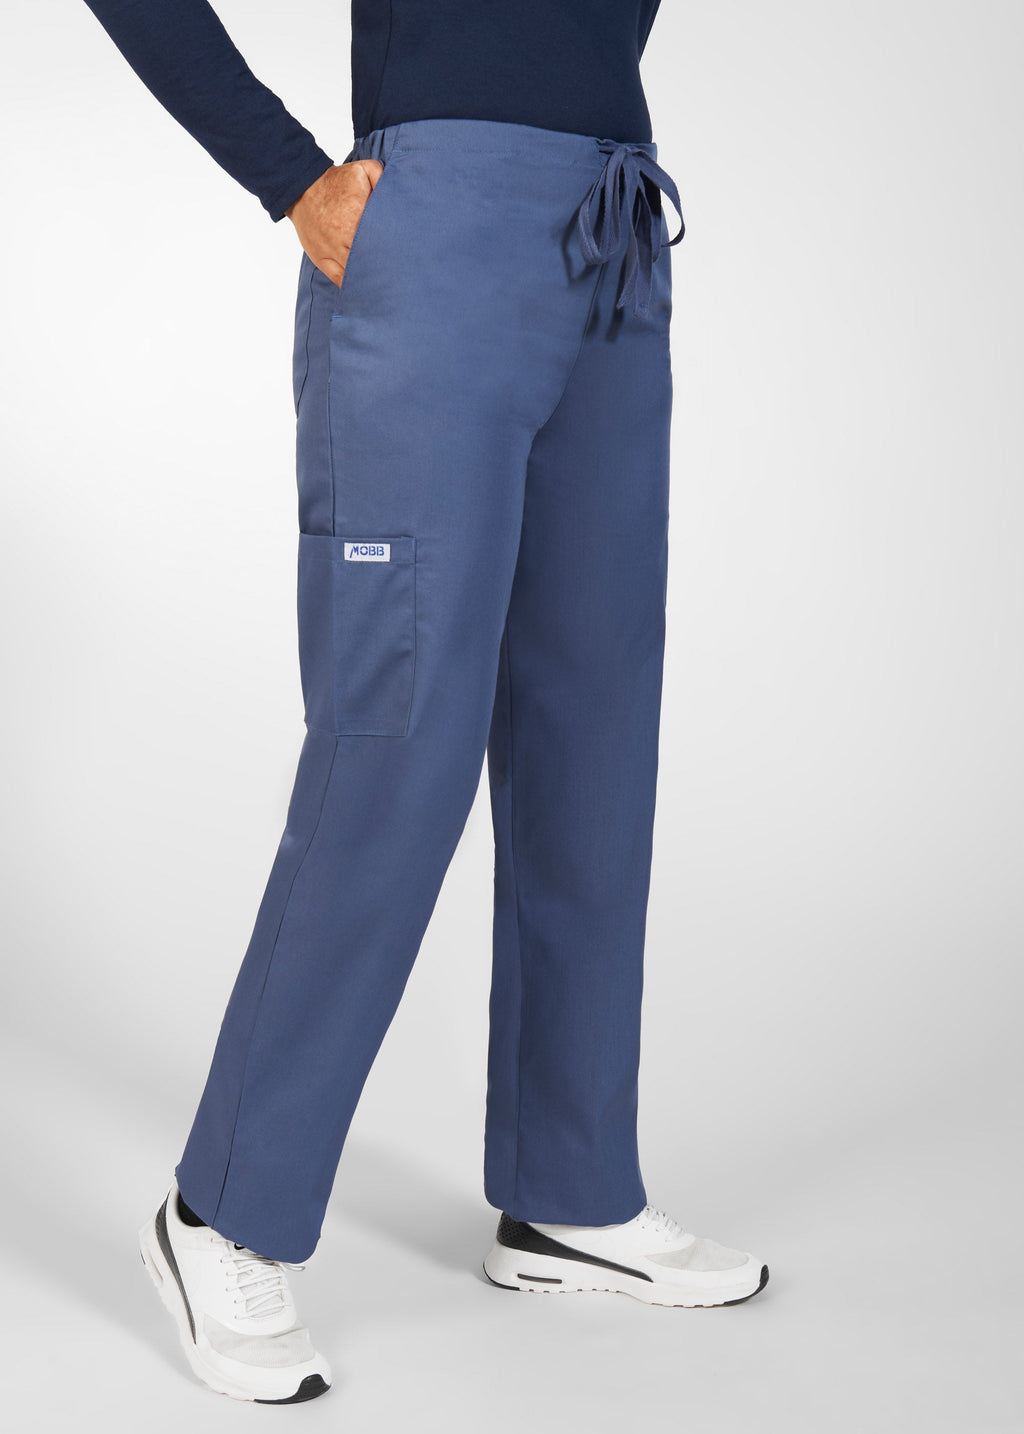 HeartSoul Women's Low Rise Drawstring Scrub Pants-HS025 – Lisa's Uniforms